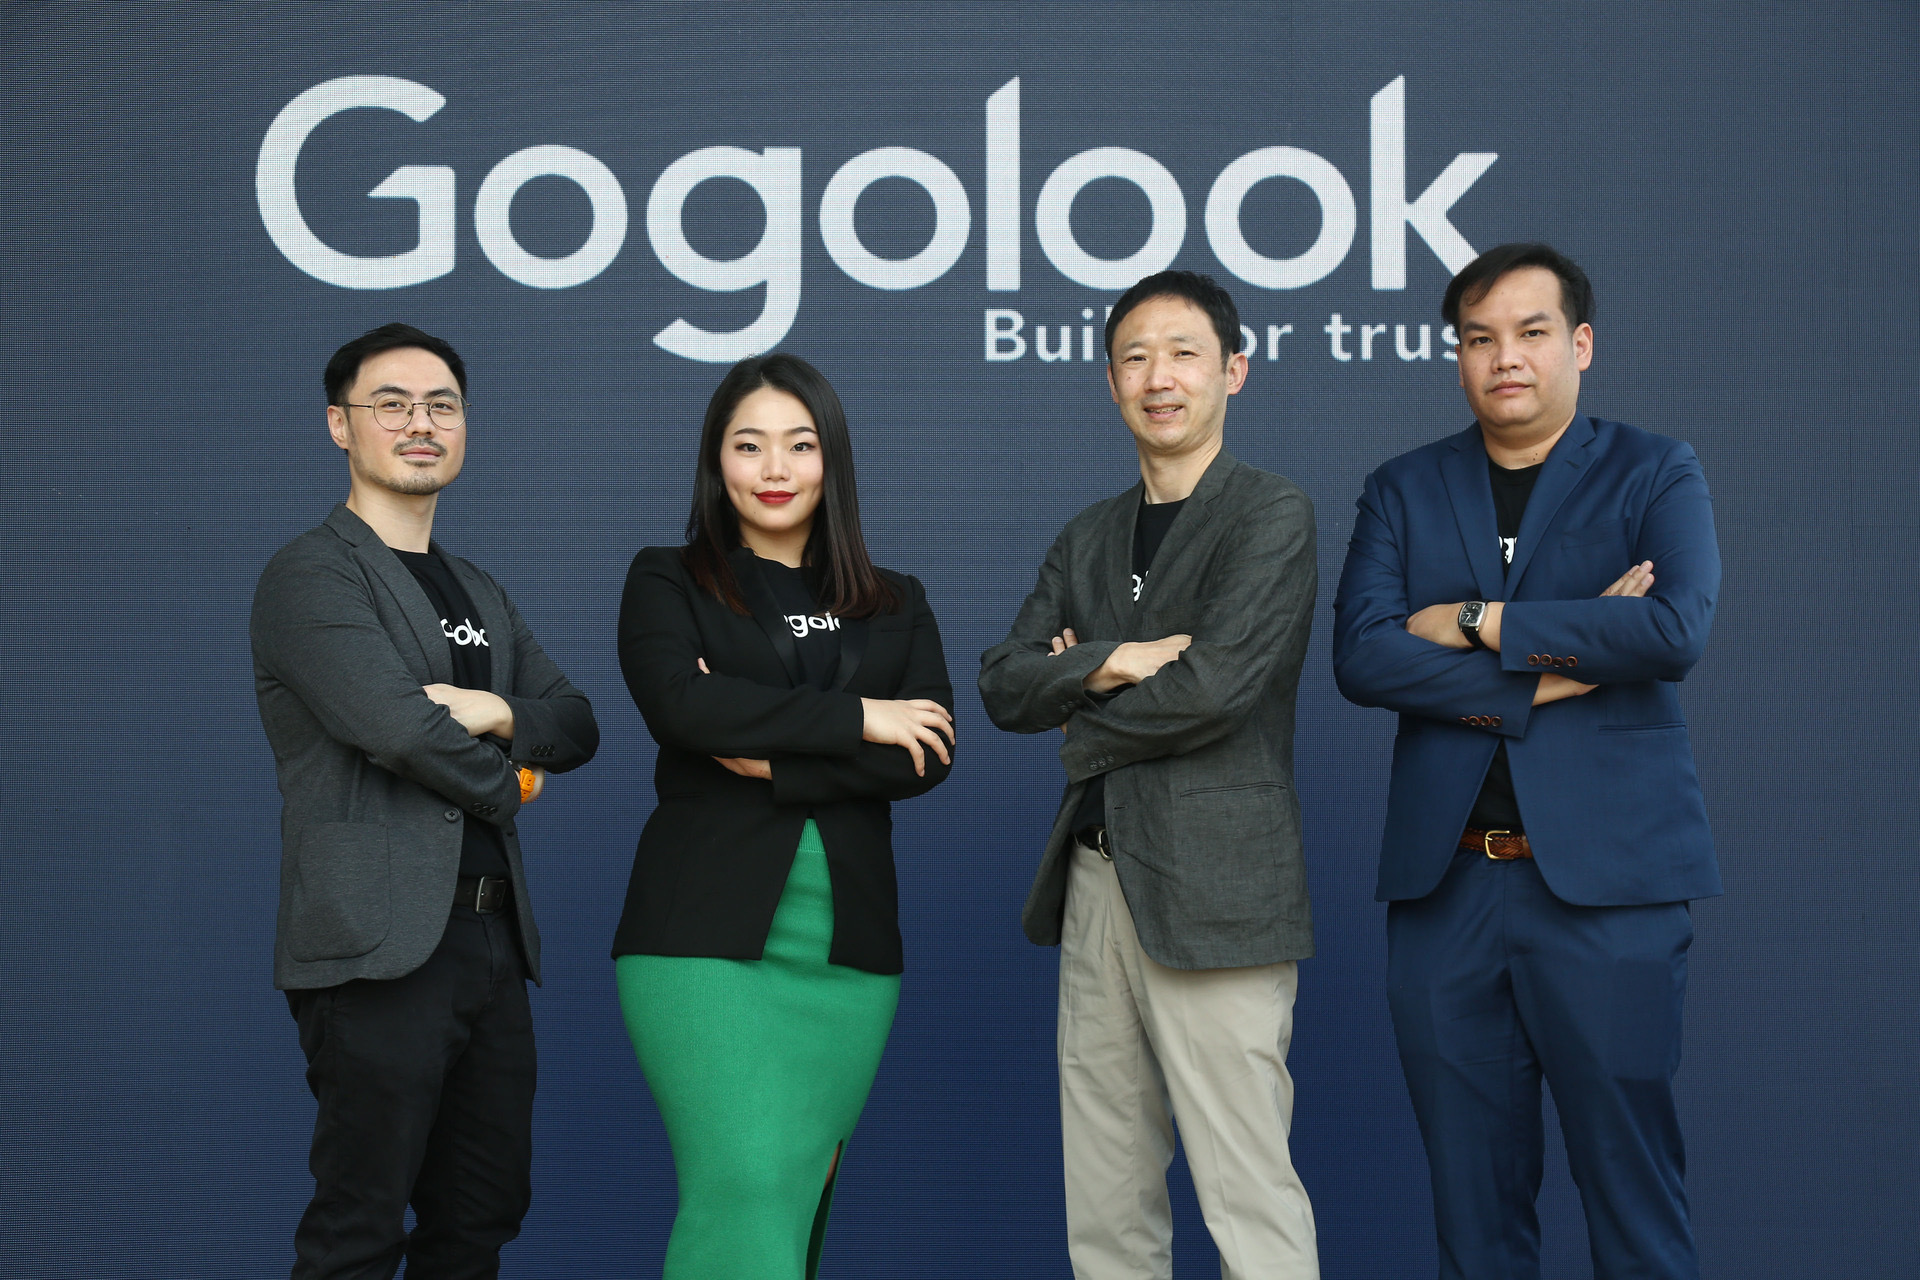 Gogolook ปั้น Whoscall แพลตฟอร์มต่อต้านการฉ้อโกงแห่งแรกในไทย ปกป้องคนไม่ให้ตกเป็นเหยื่อ การใช้โทรศัพท์และข้อความหลอกลวง